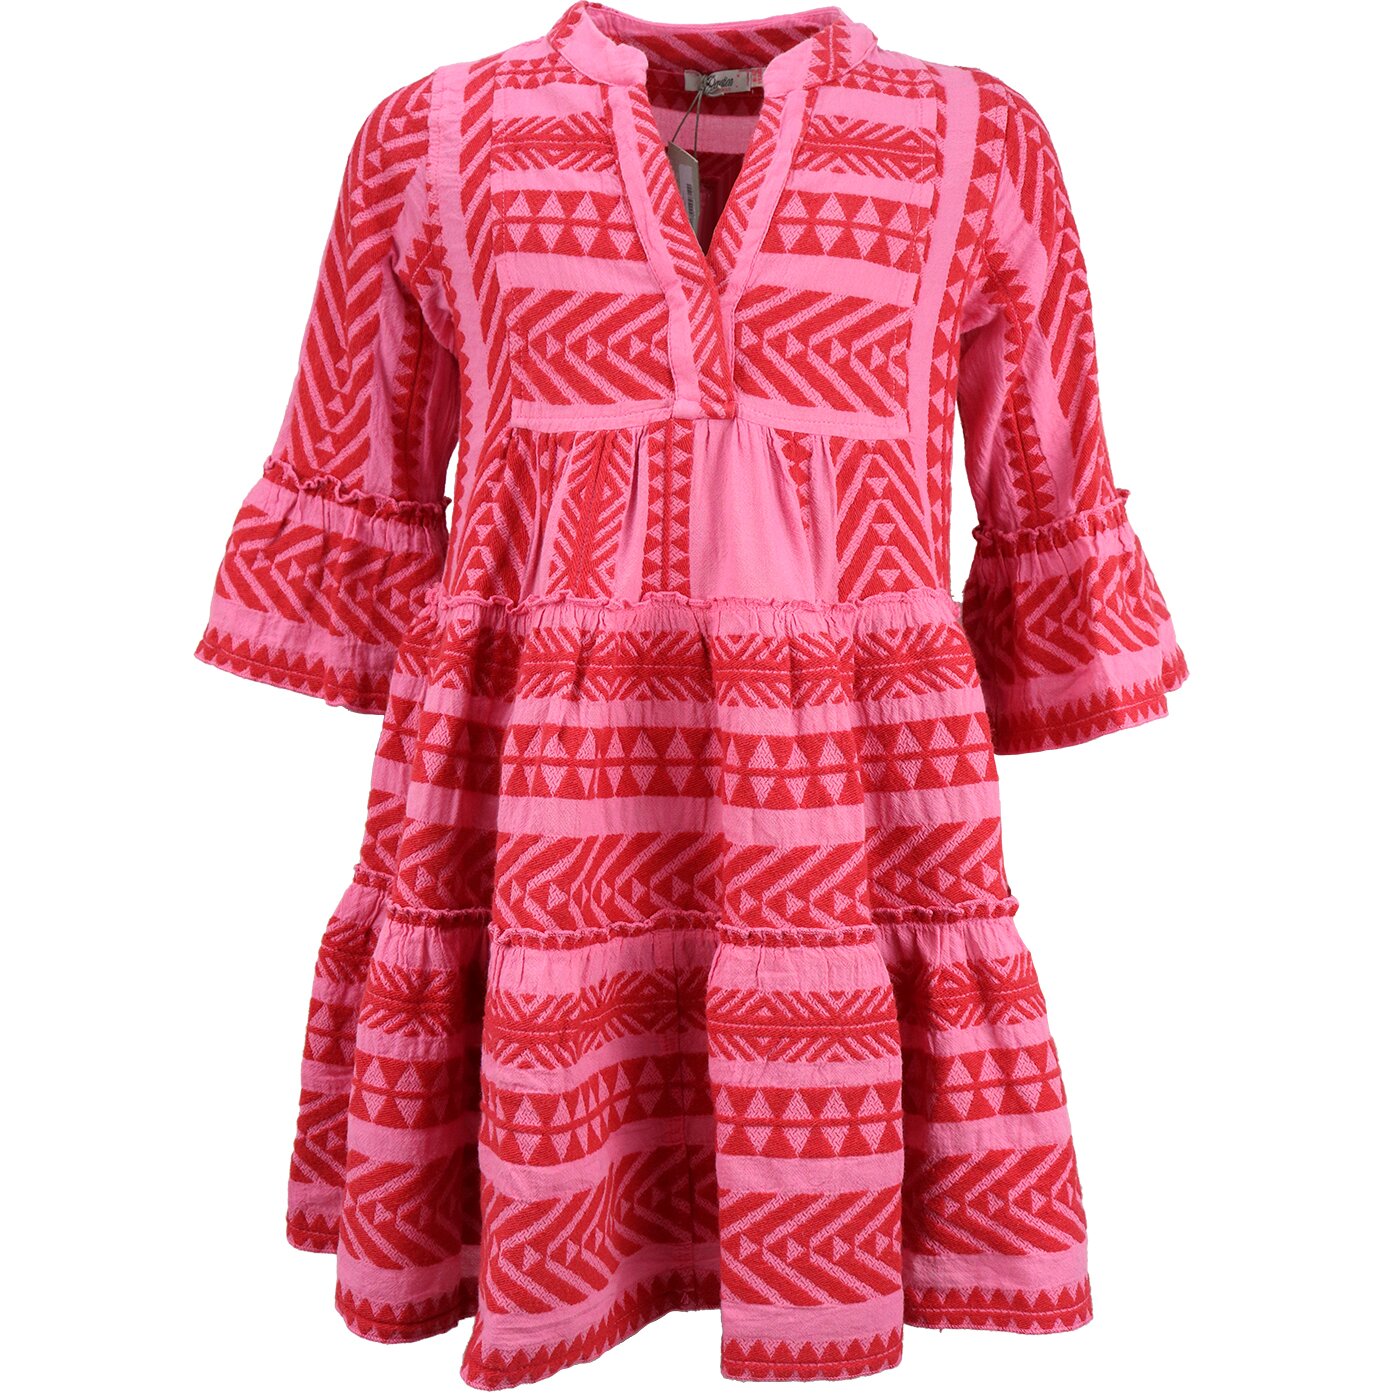 matchmaker Druppelen vrijgesteld Devotion Ella Short Dress Red Pink 0215011G - Fashion for Kids & Teens